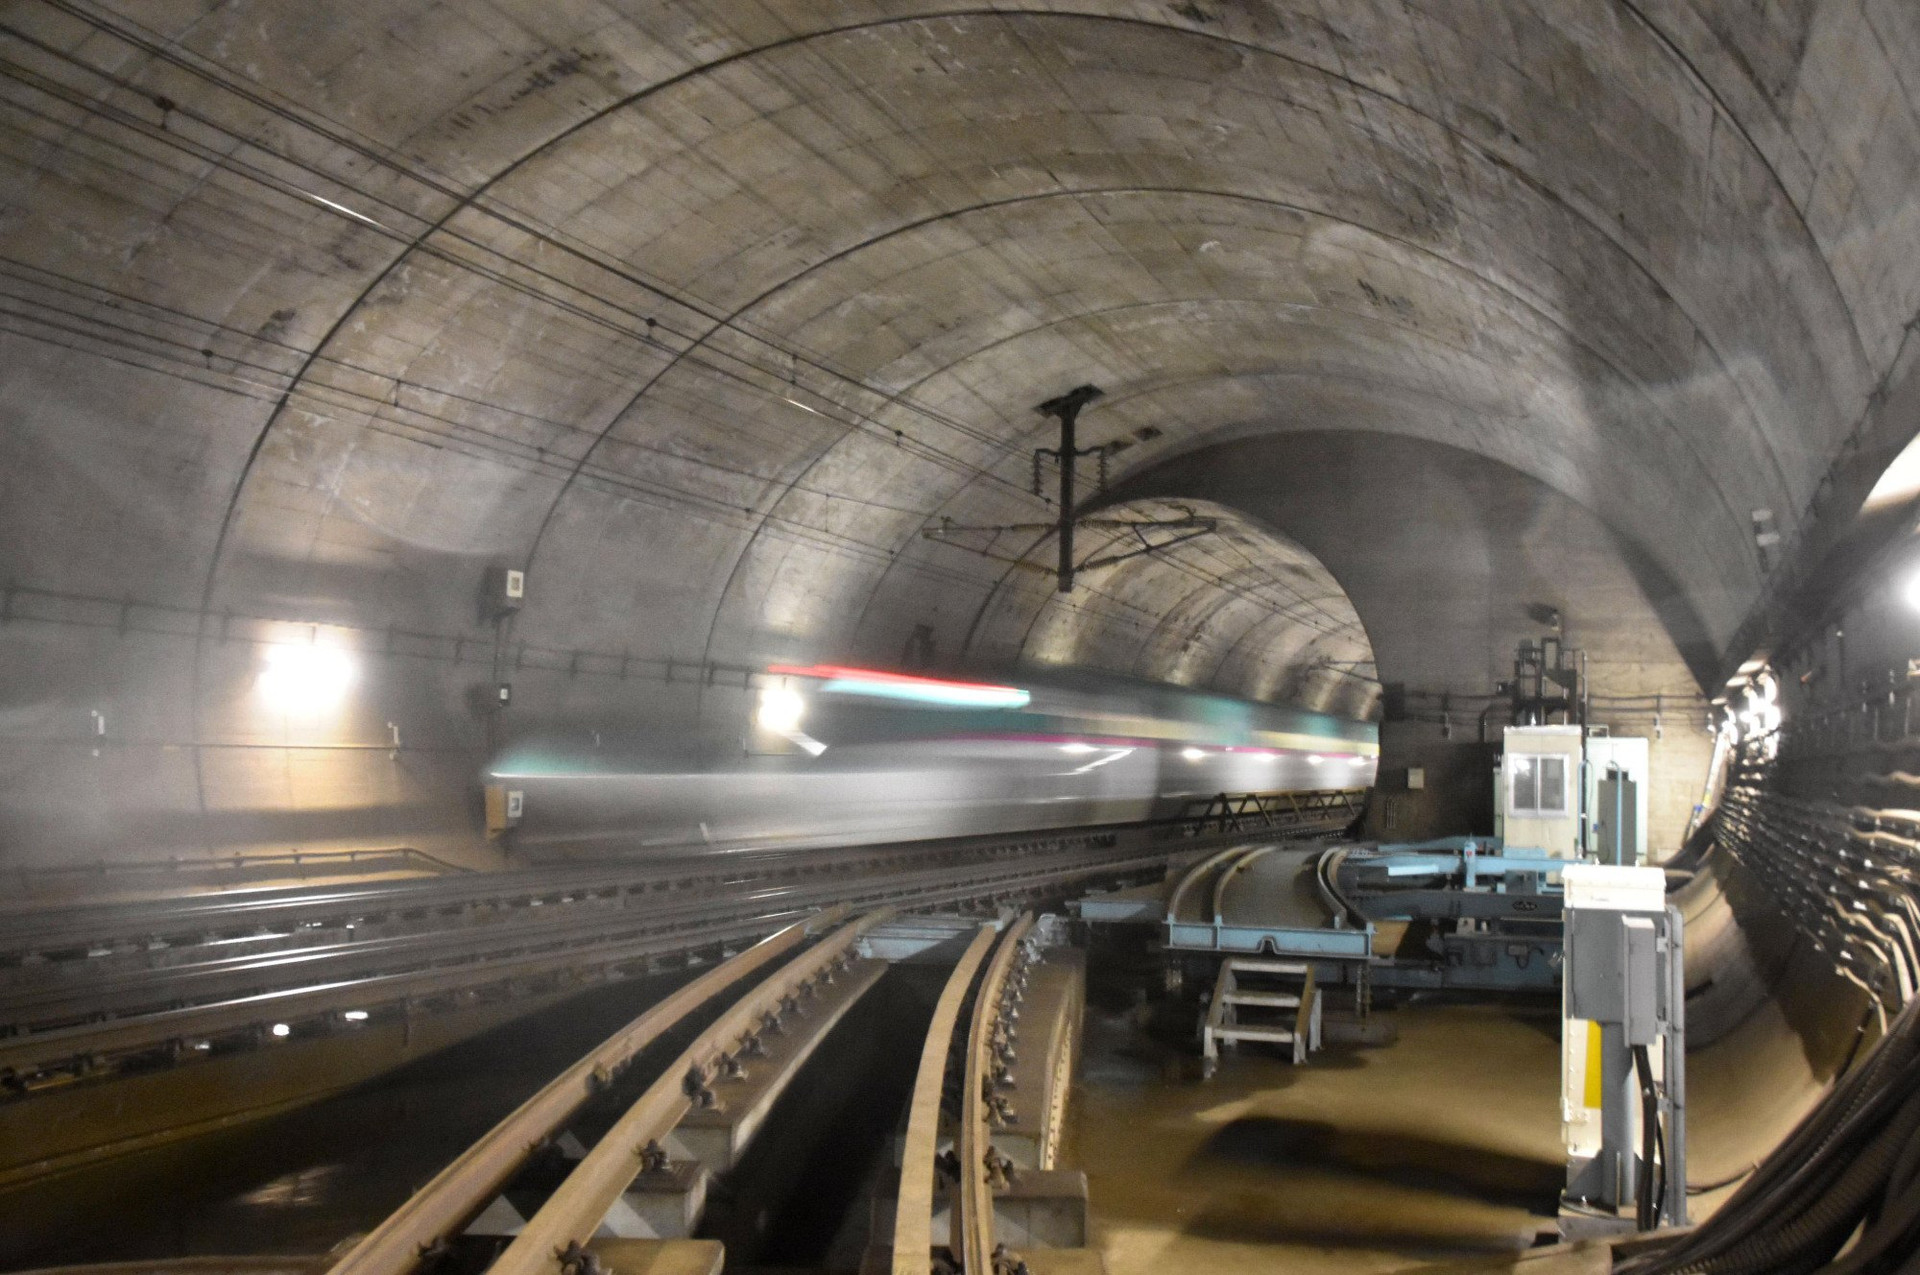 Đường hầm Seikan là hầm đường sắt dưới biển dài nhất thế giới - 53,85km